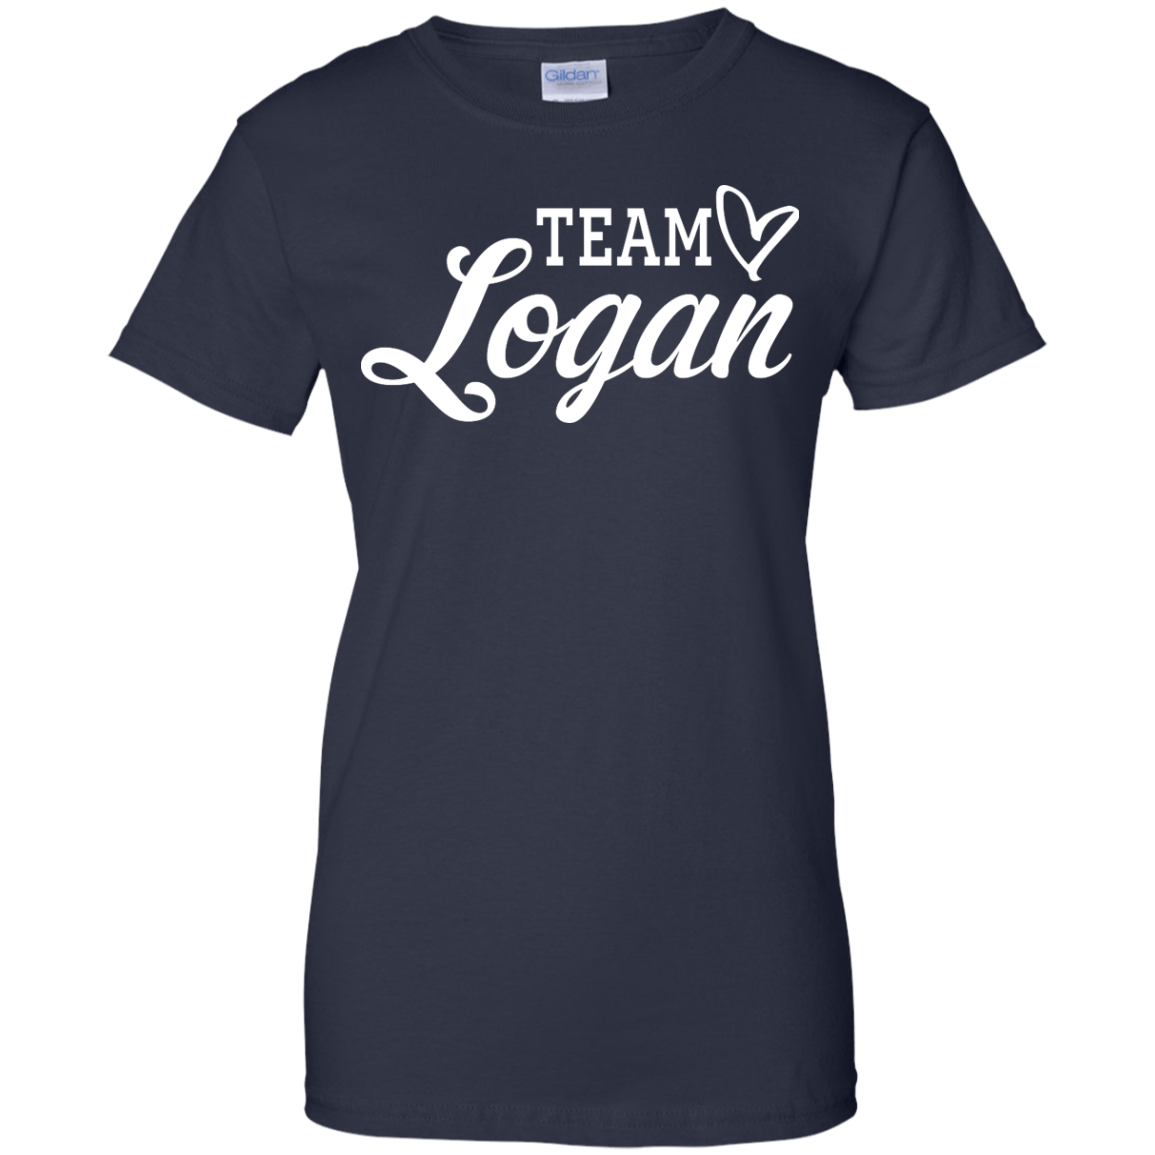 team logan shirt